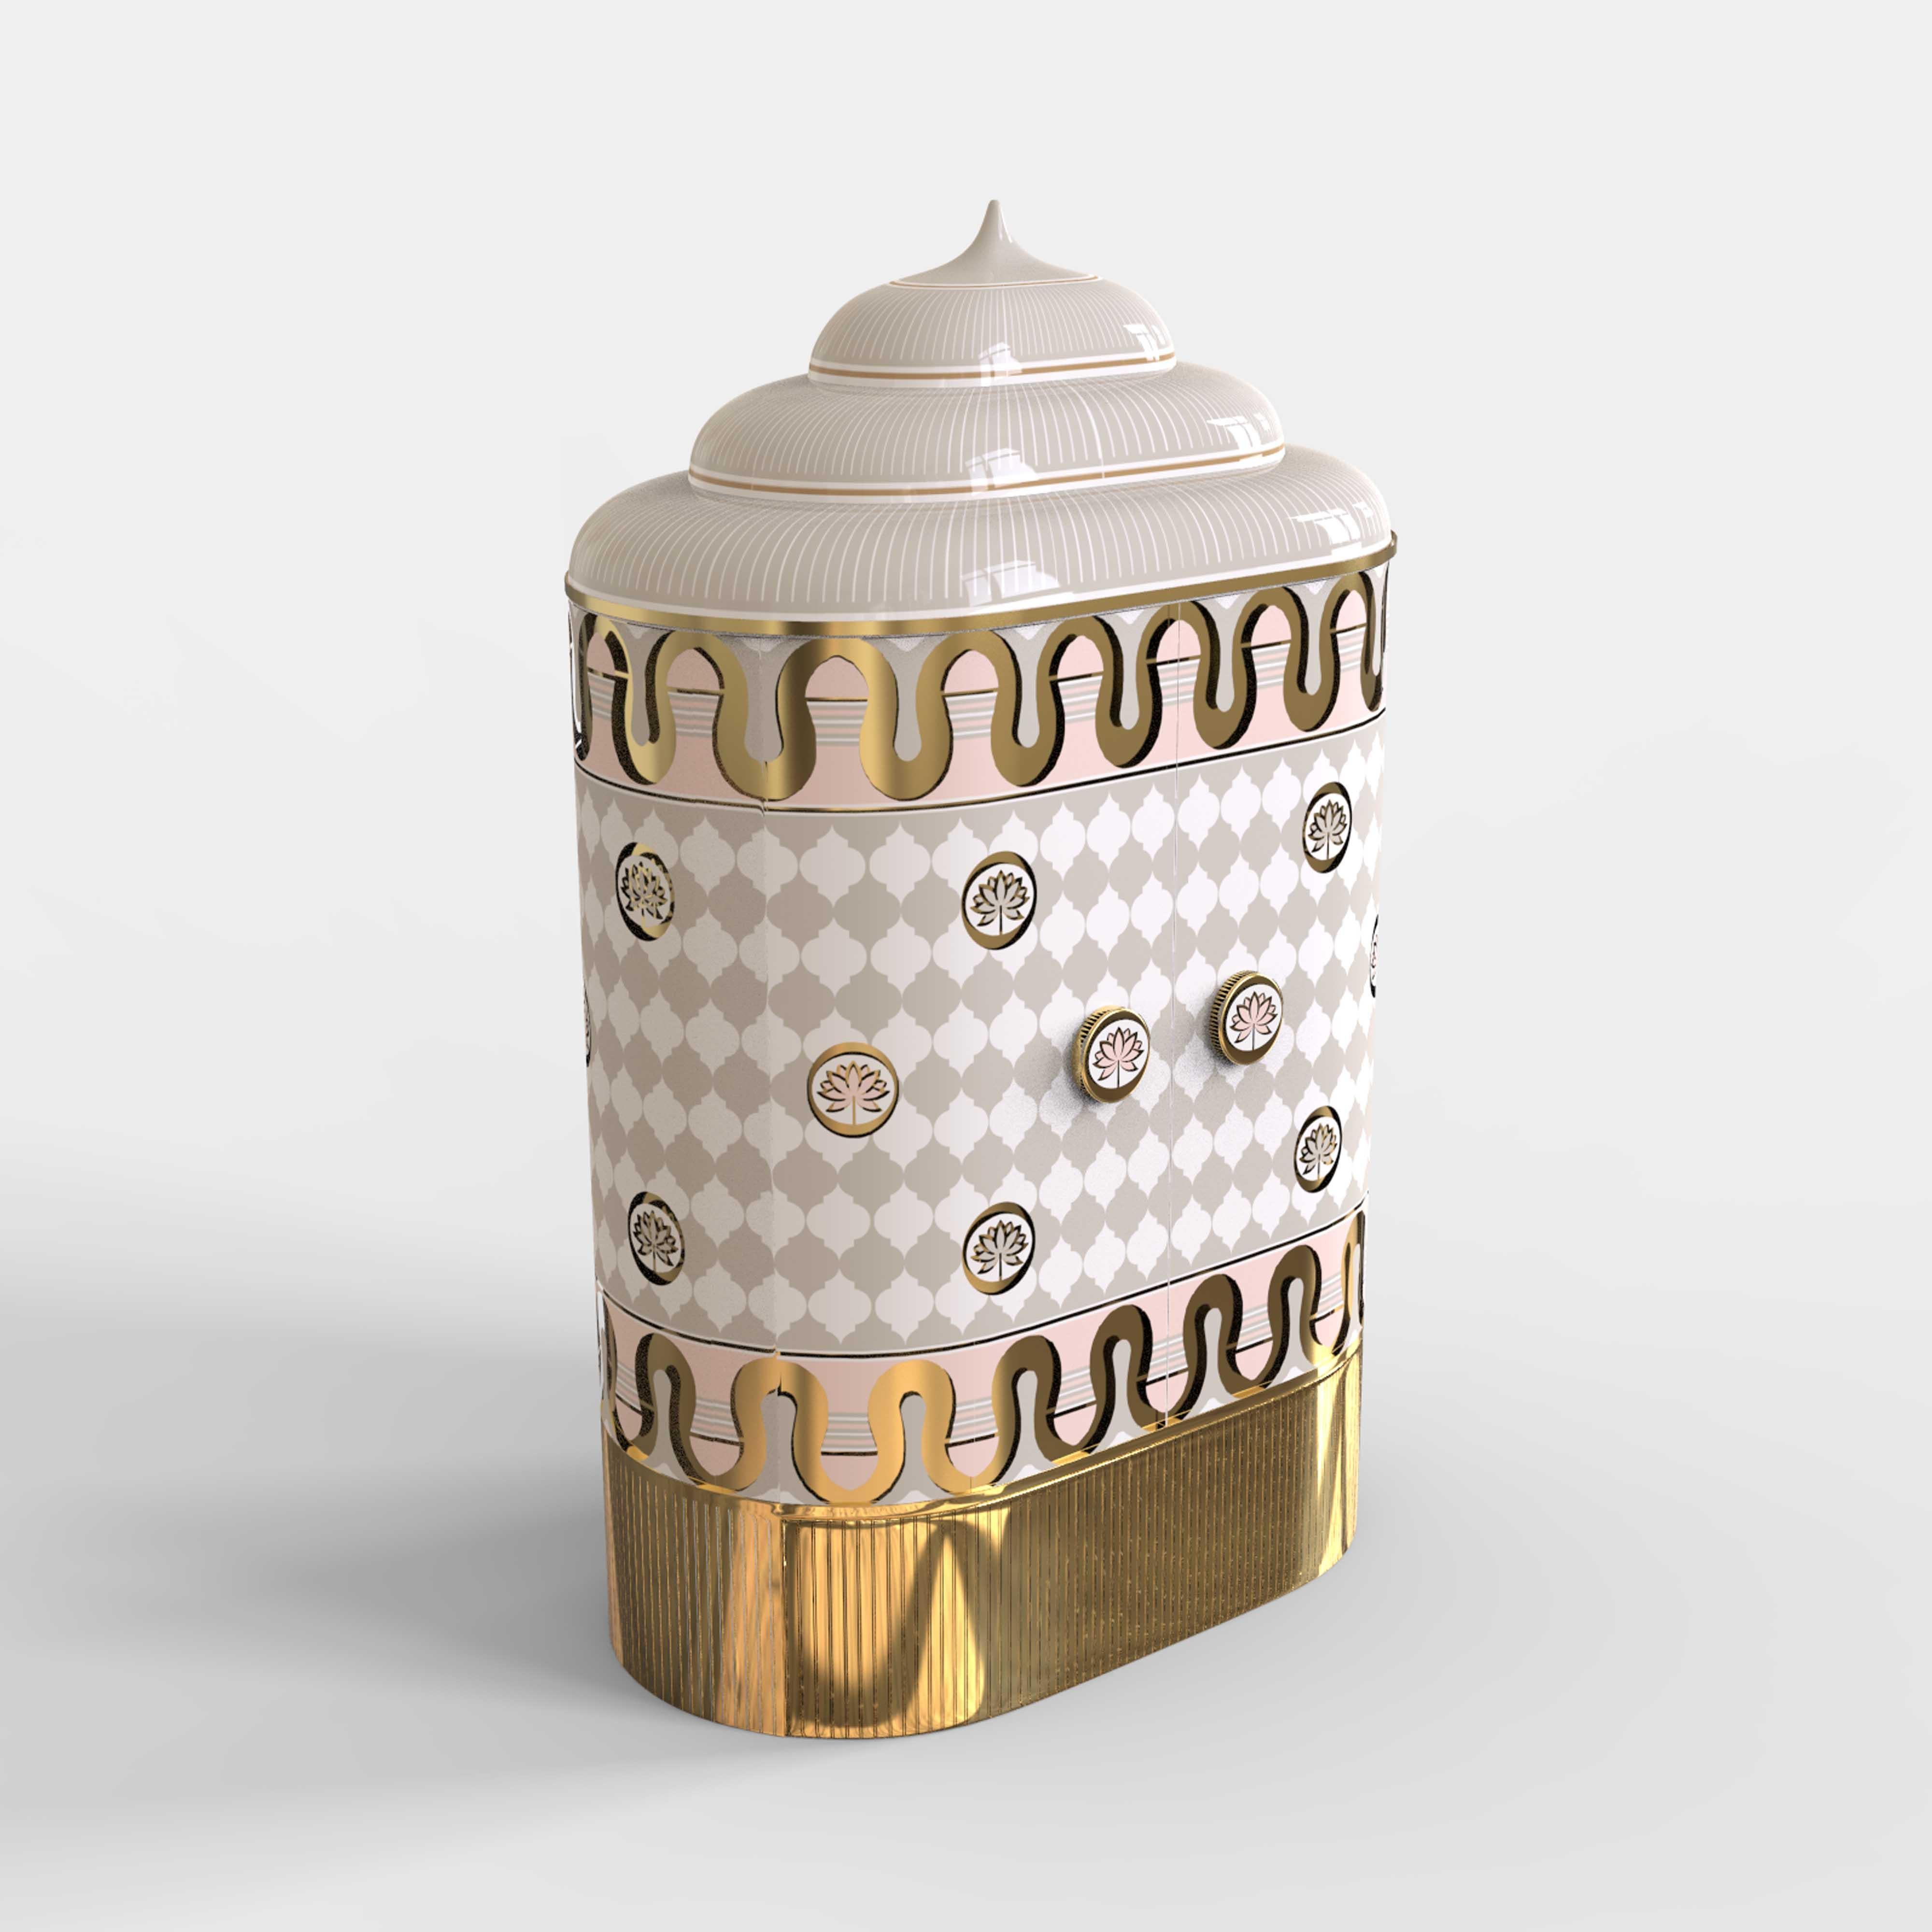 Der weiß-goldene Aufbewahrungsschrank Lotus sanctum mit Messingintarsien von Matteo Cibic ist ein vielseitiger Schrank, der von der Reinheit des Lotus inspiriert ist. Brünierte Messingwände und -säulen im Inneren lassen eine leuchtende Offenbarung